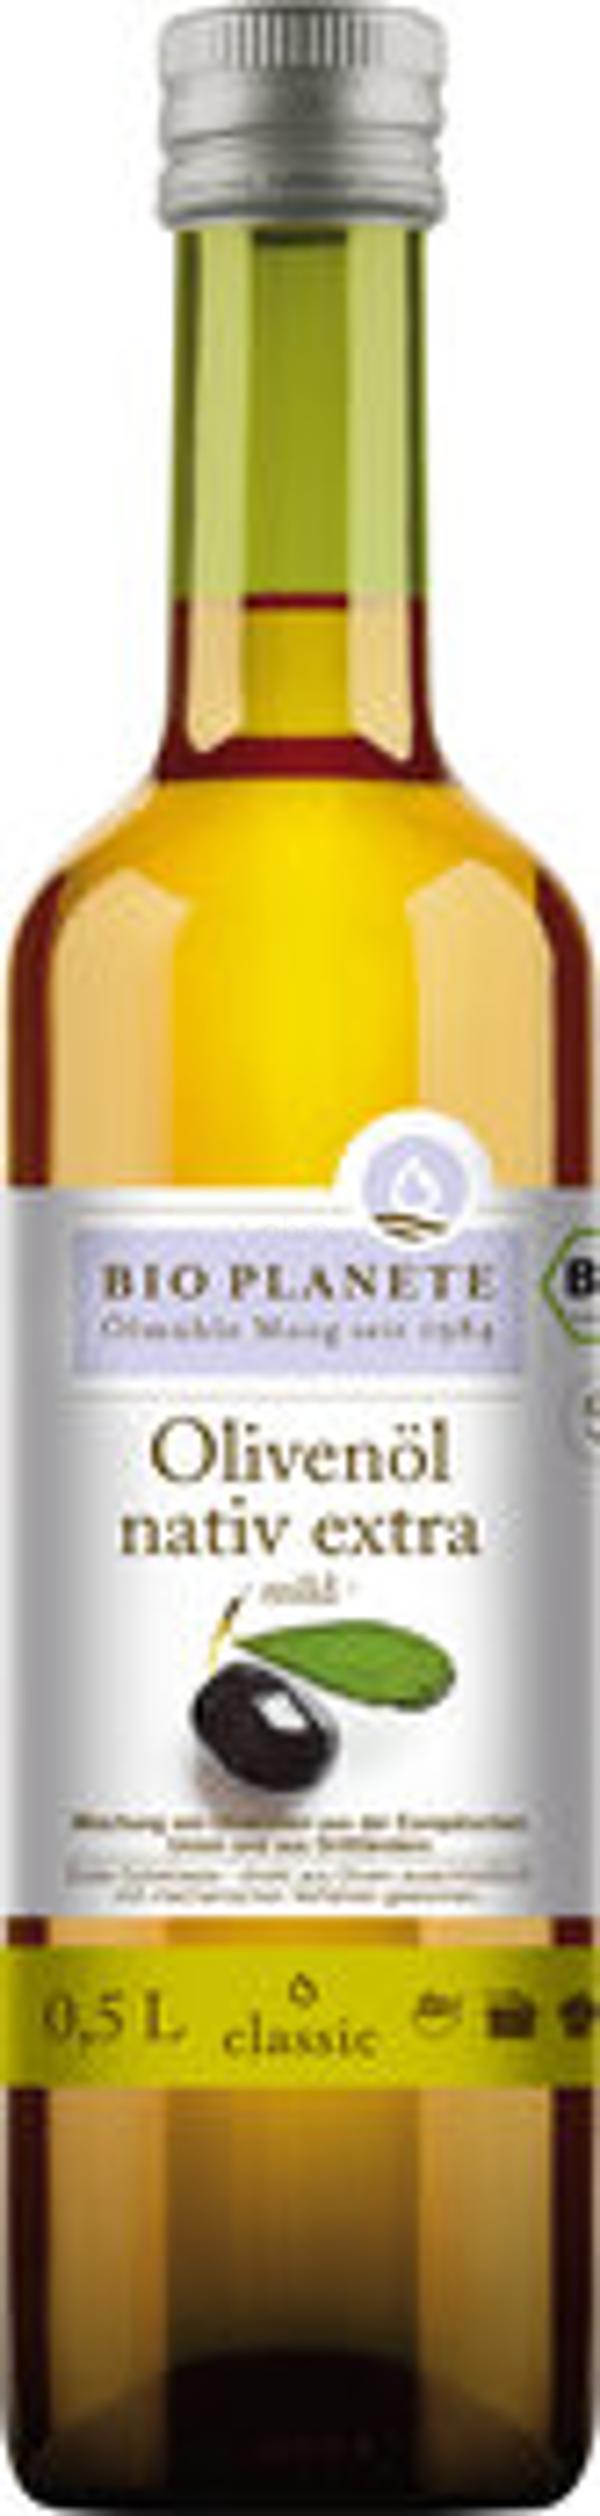 Produktfoto zu Olivenöl mild, nativ extra [0,5l]